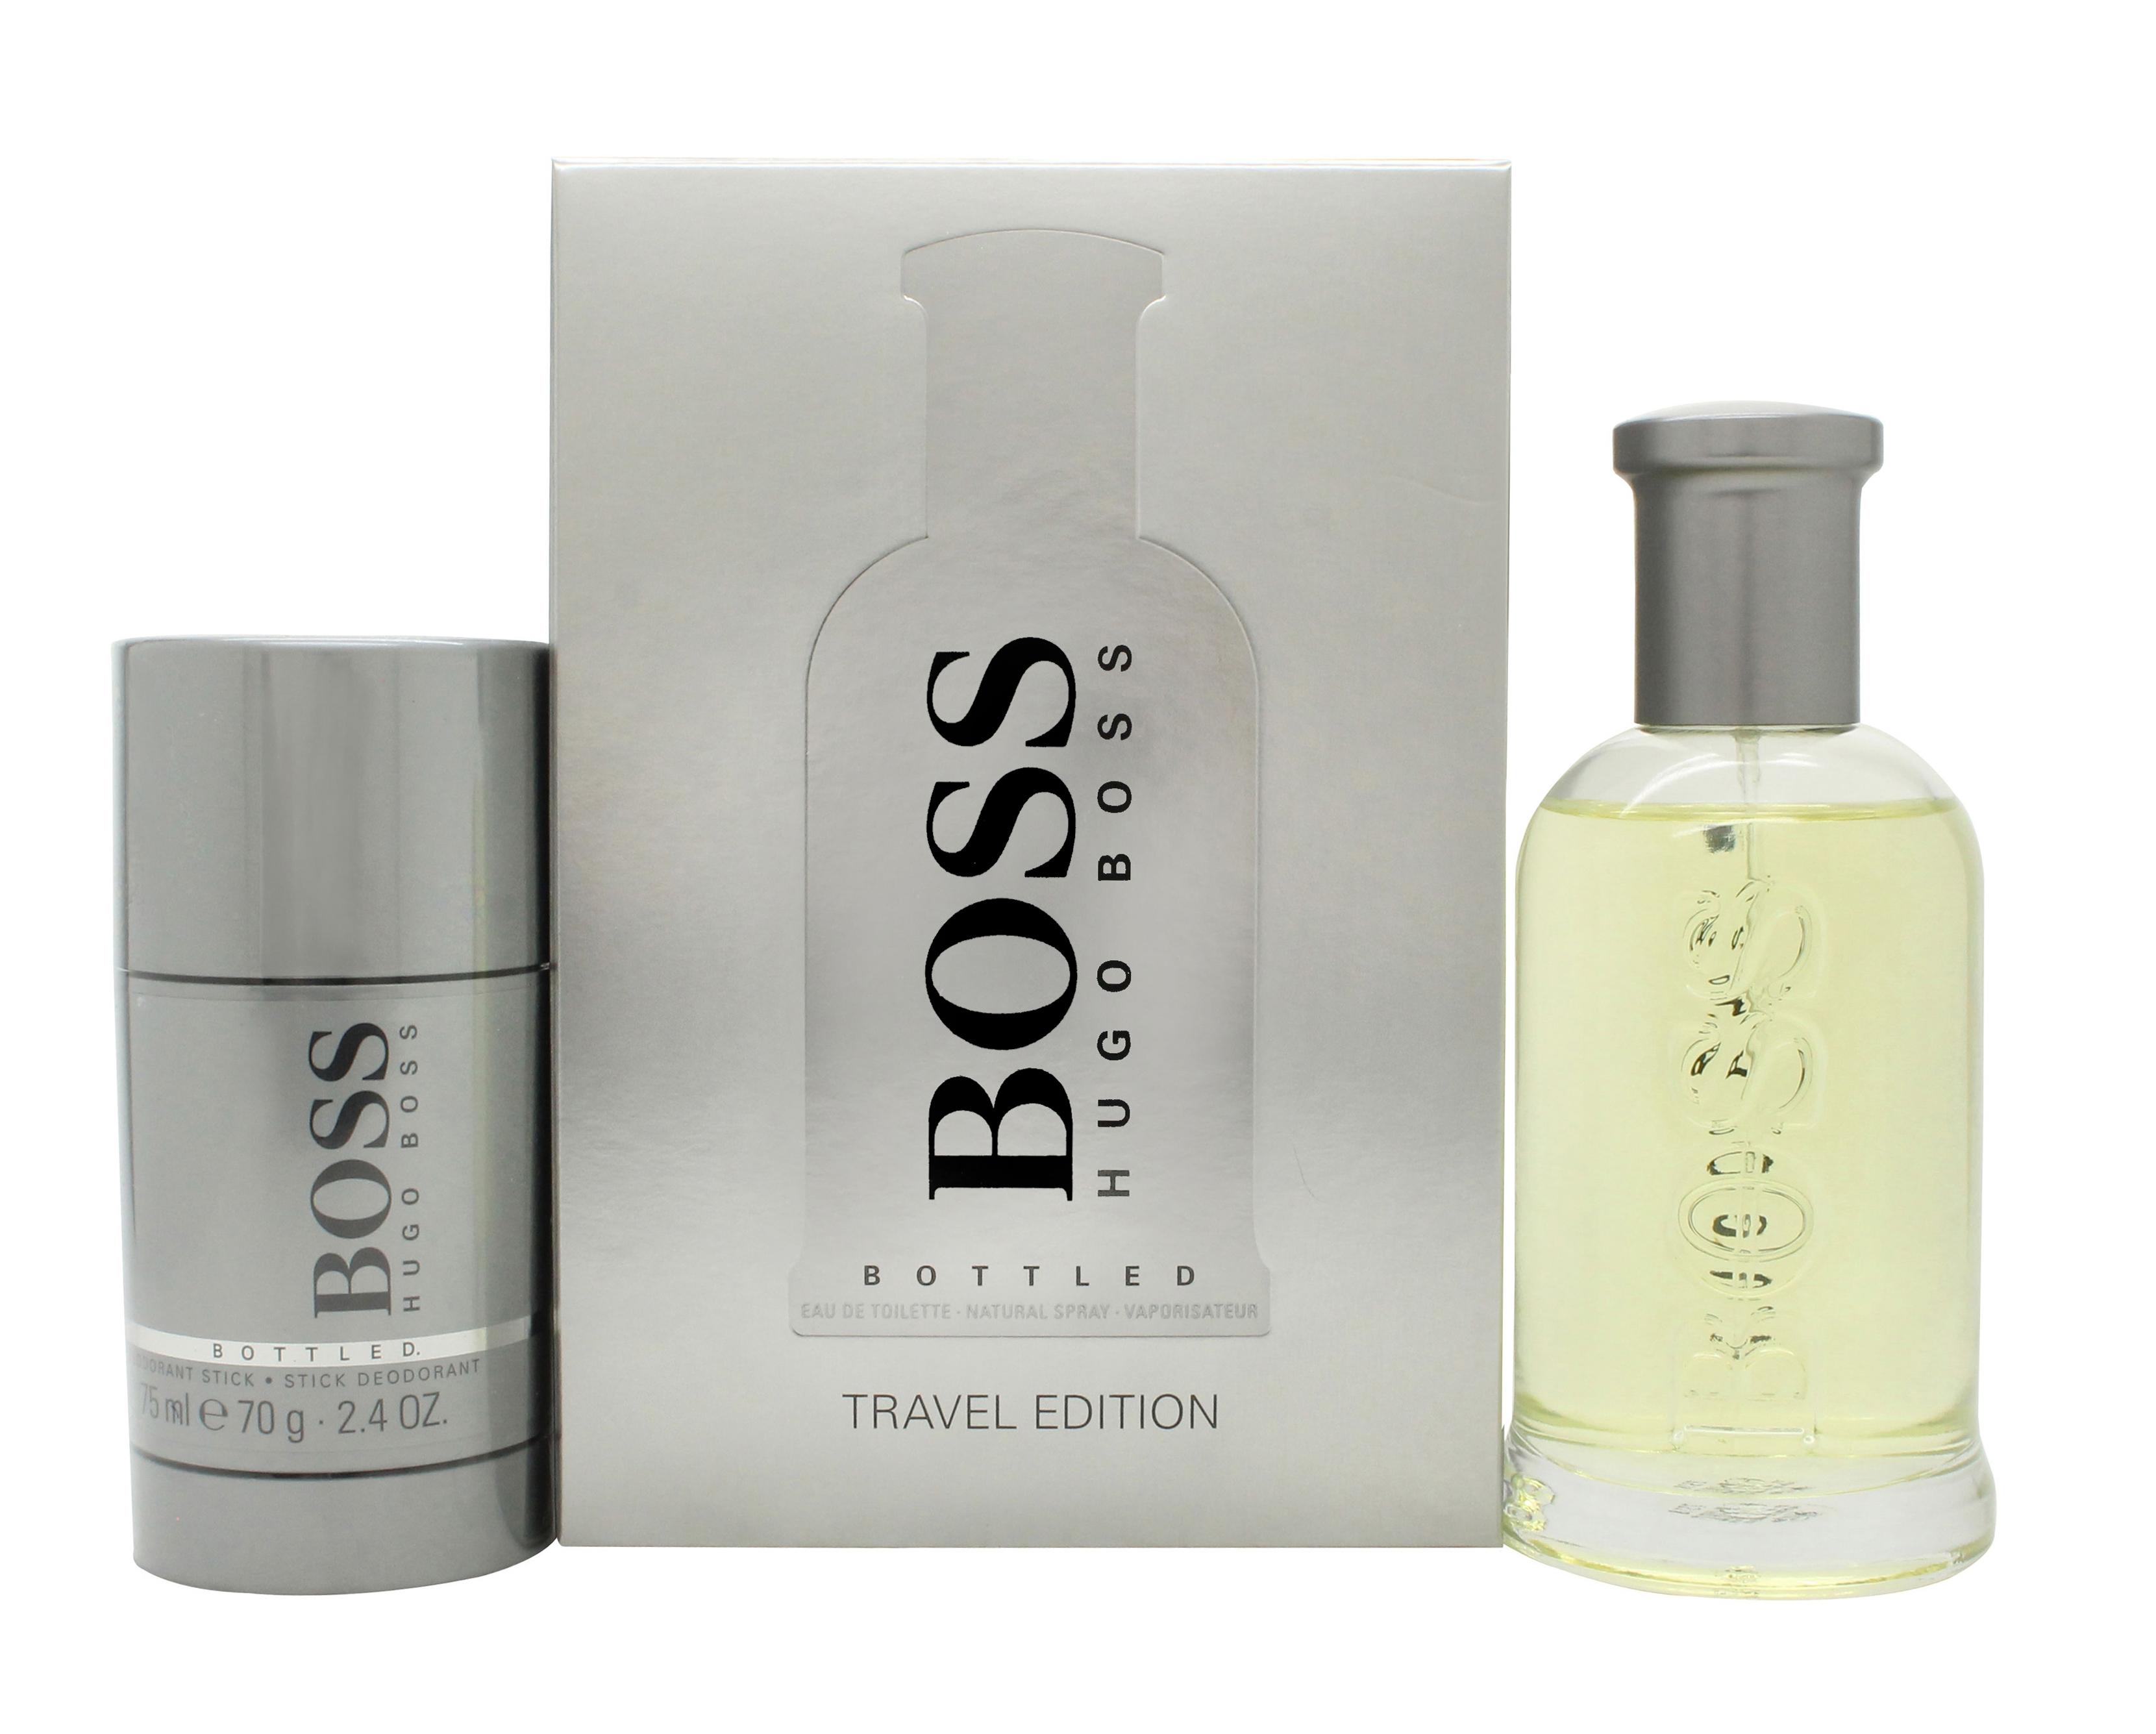 Hugo Boss Boss Bottled Gift Set 100ml EDT + 75ml Deodorant Stick